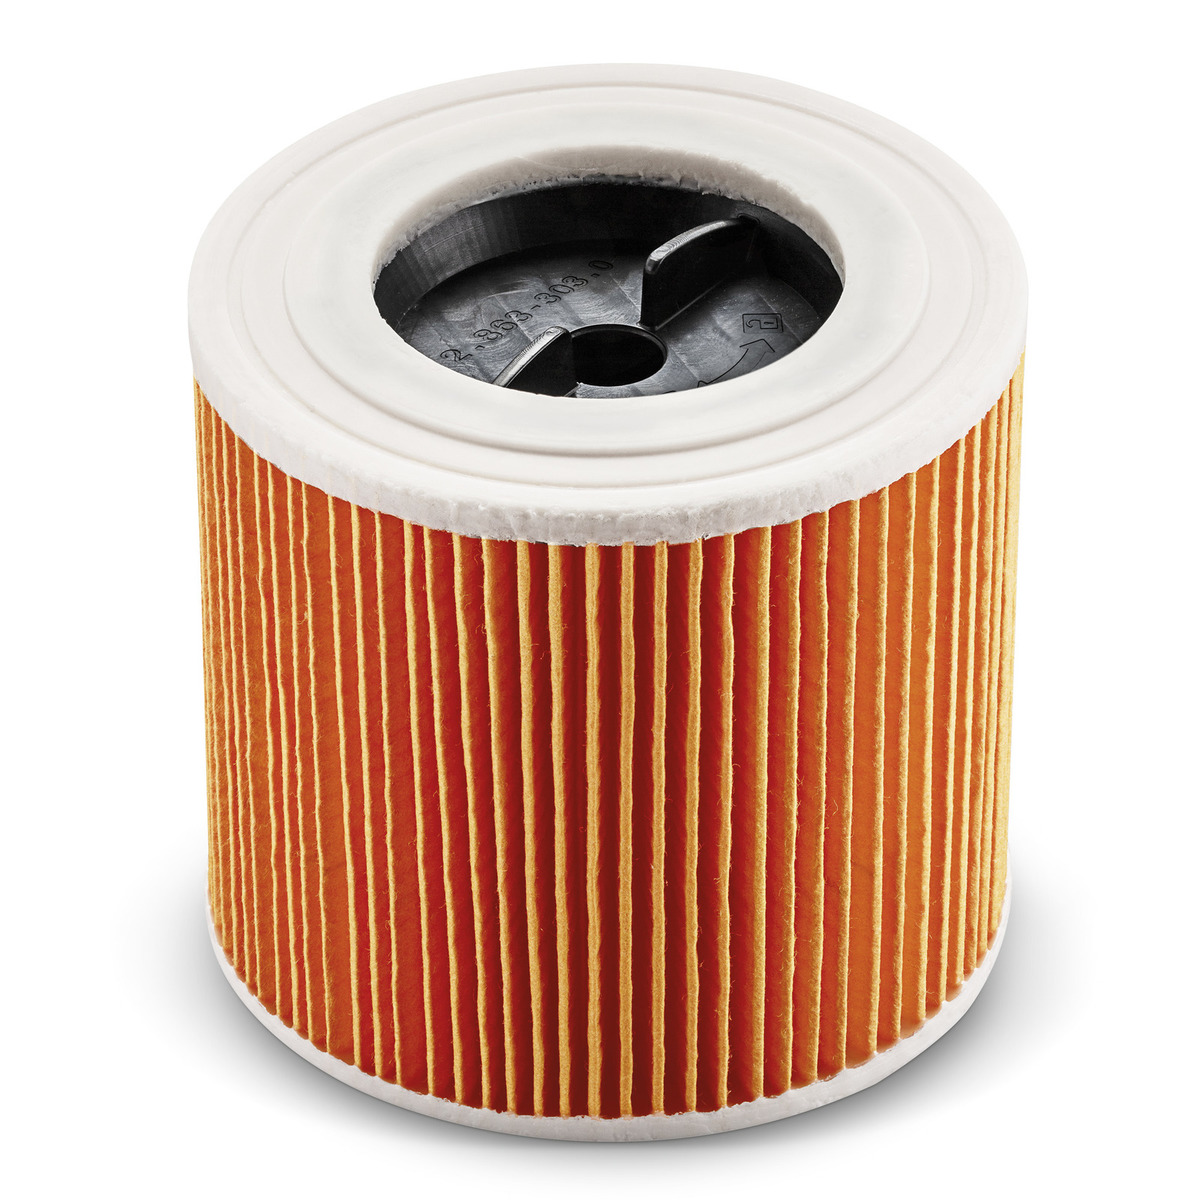 Патронный фильтр для моделей пылесосов Karcher  SE и WD